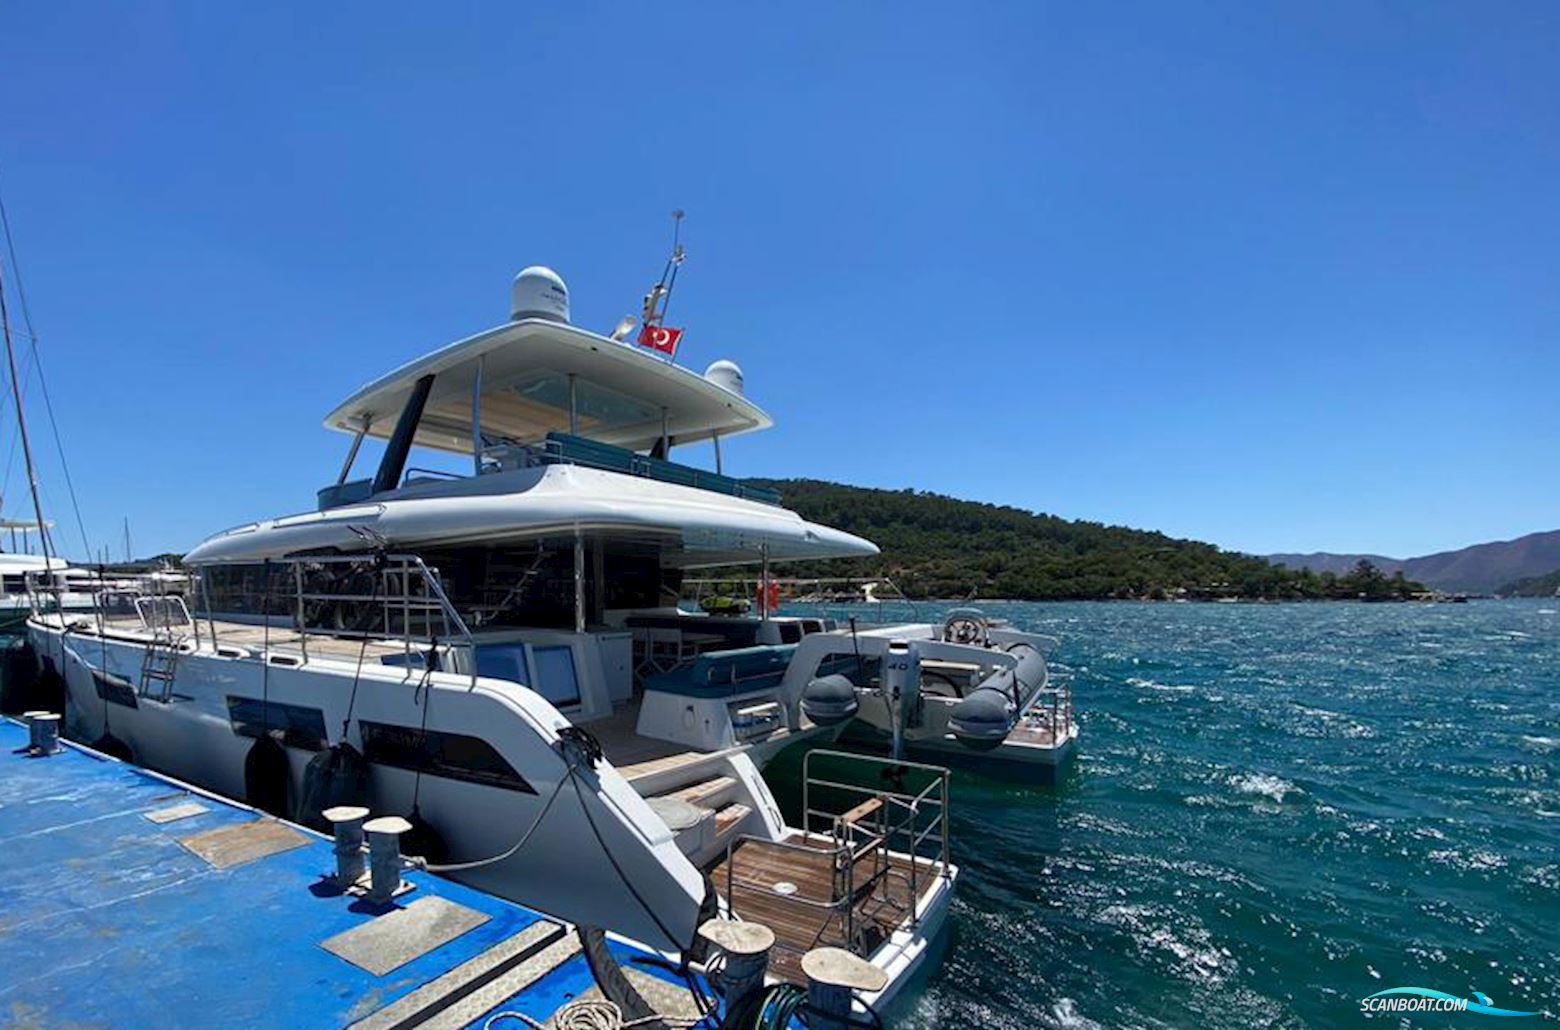 Lagoon LG 630 Moteur Yacht Multihull boten 2019, met Volvo Penta motor, Turkey